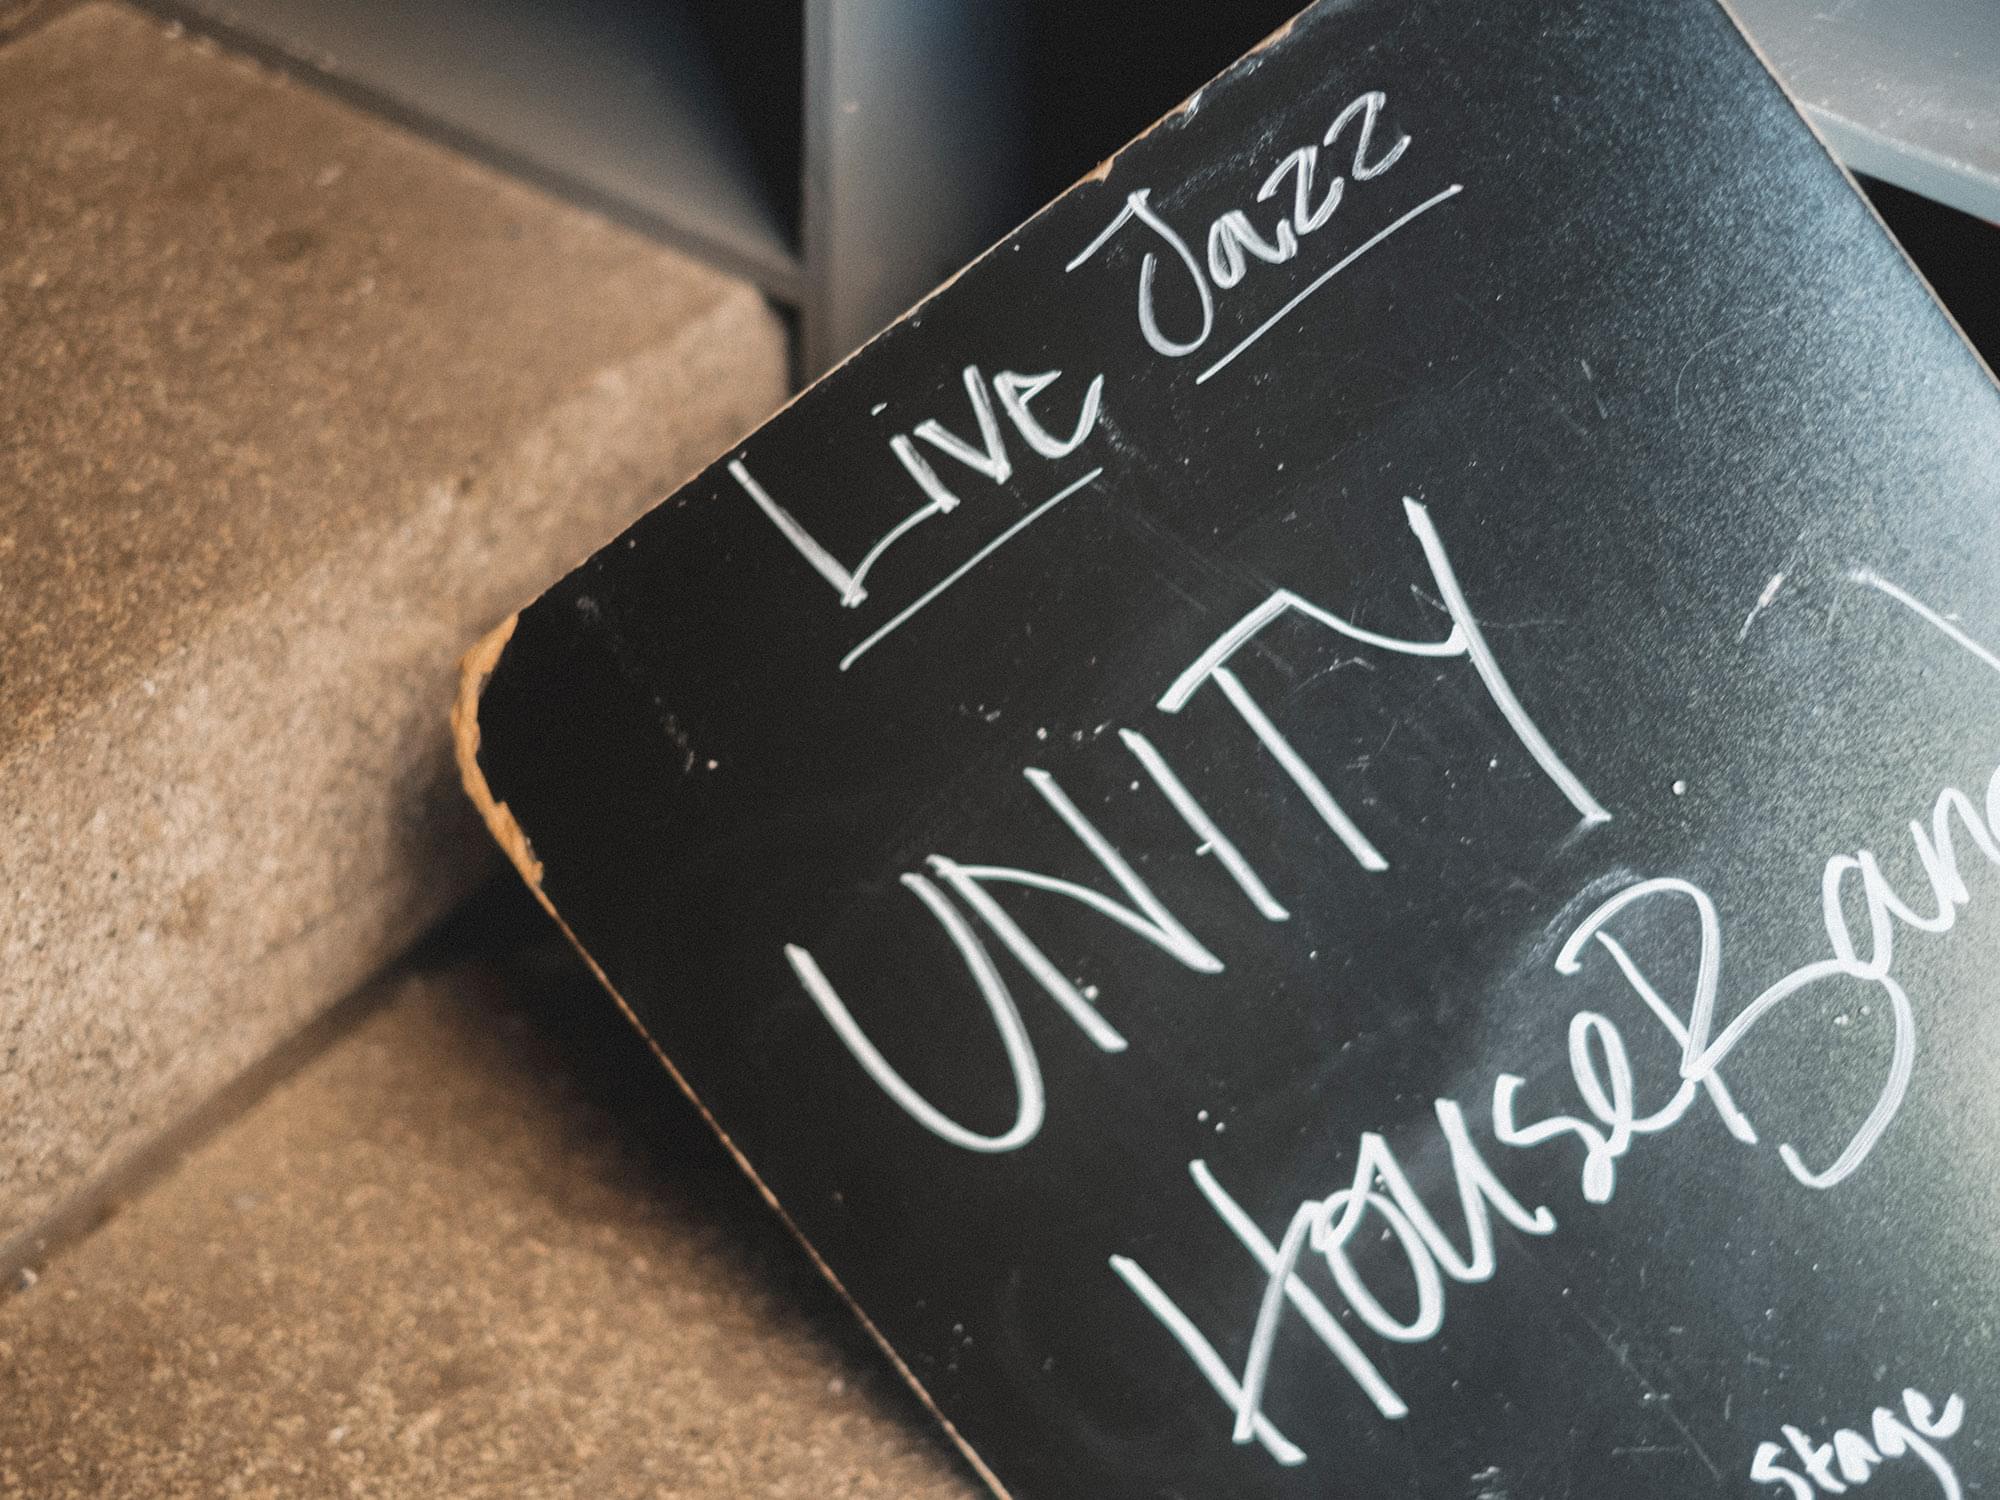 En svart tavla med texten "Live Jazz" och "Unity House Band" .